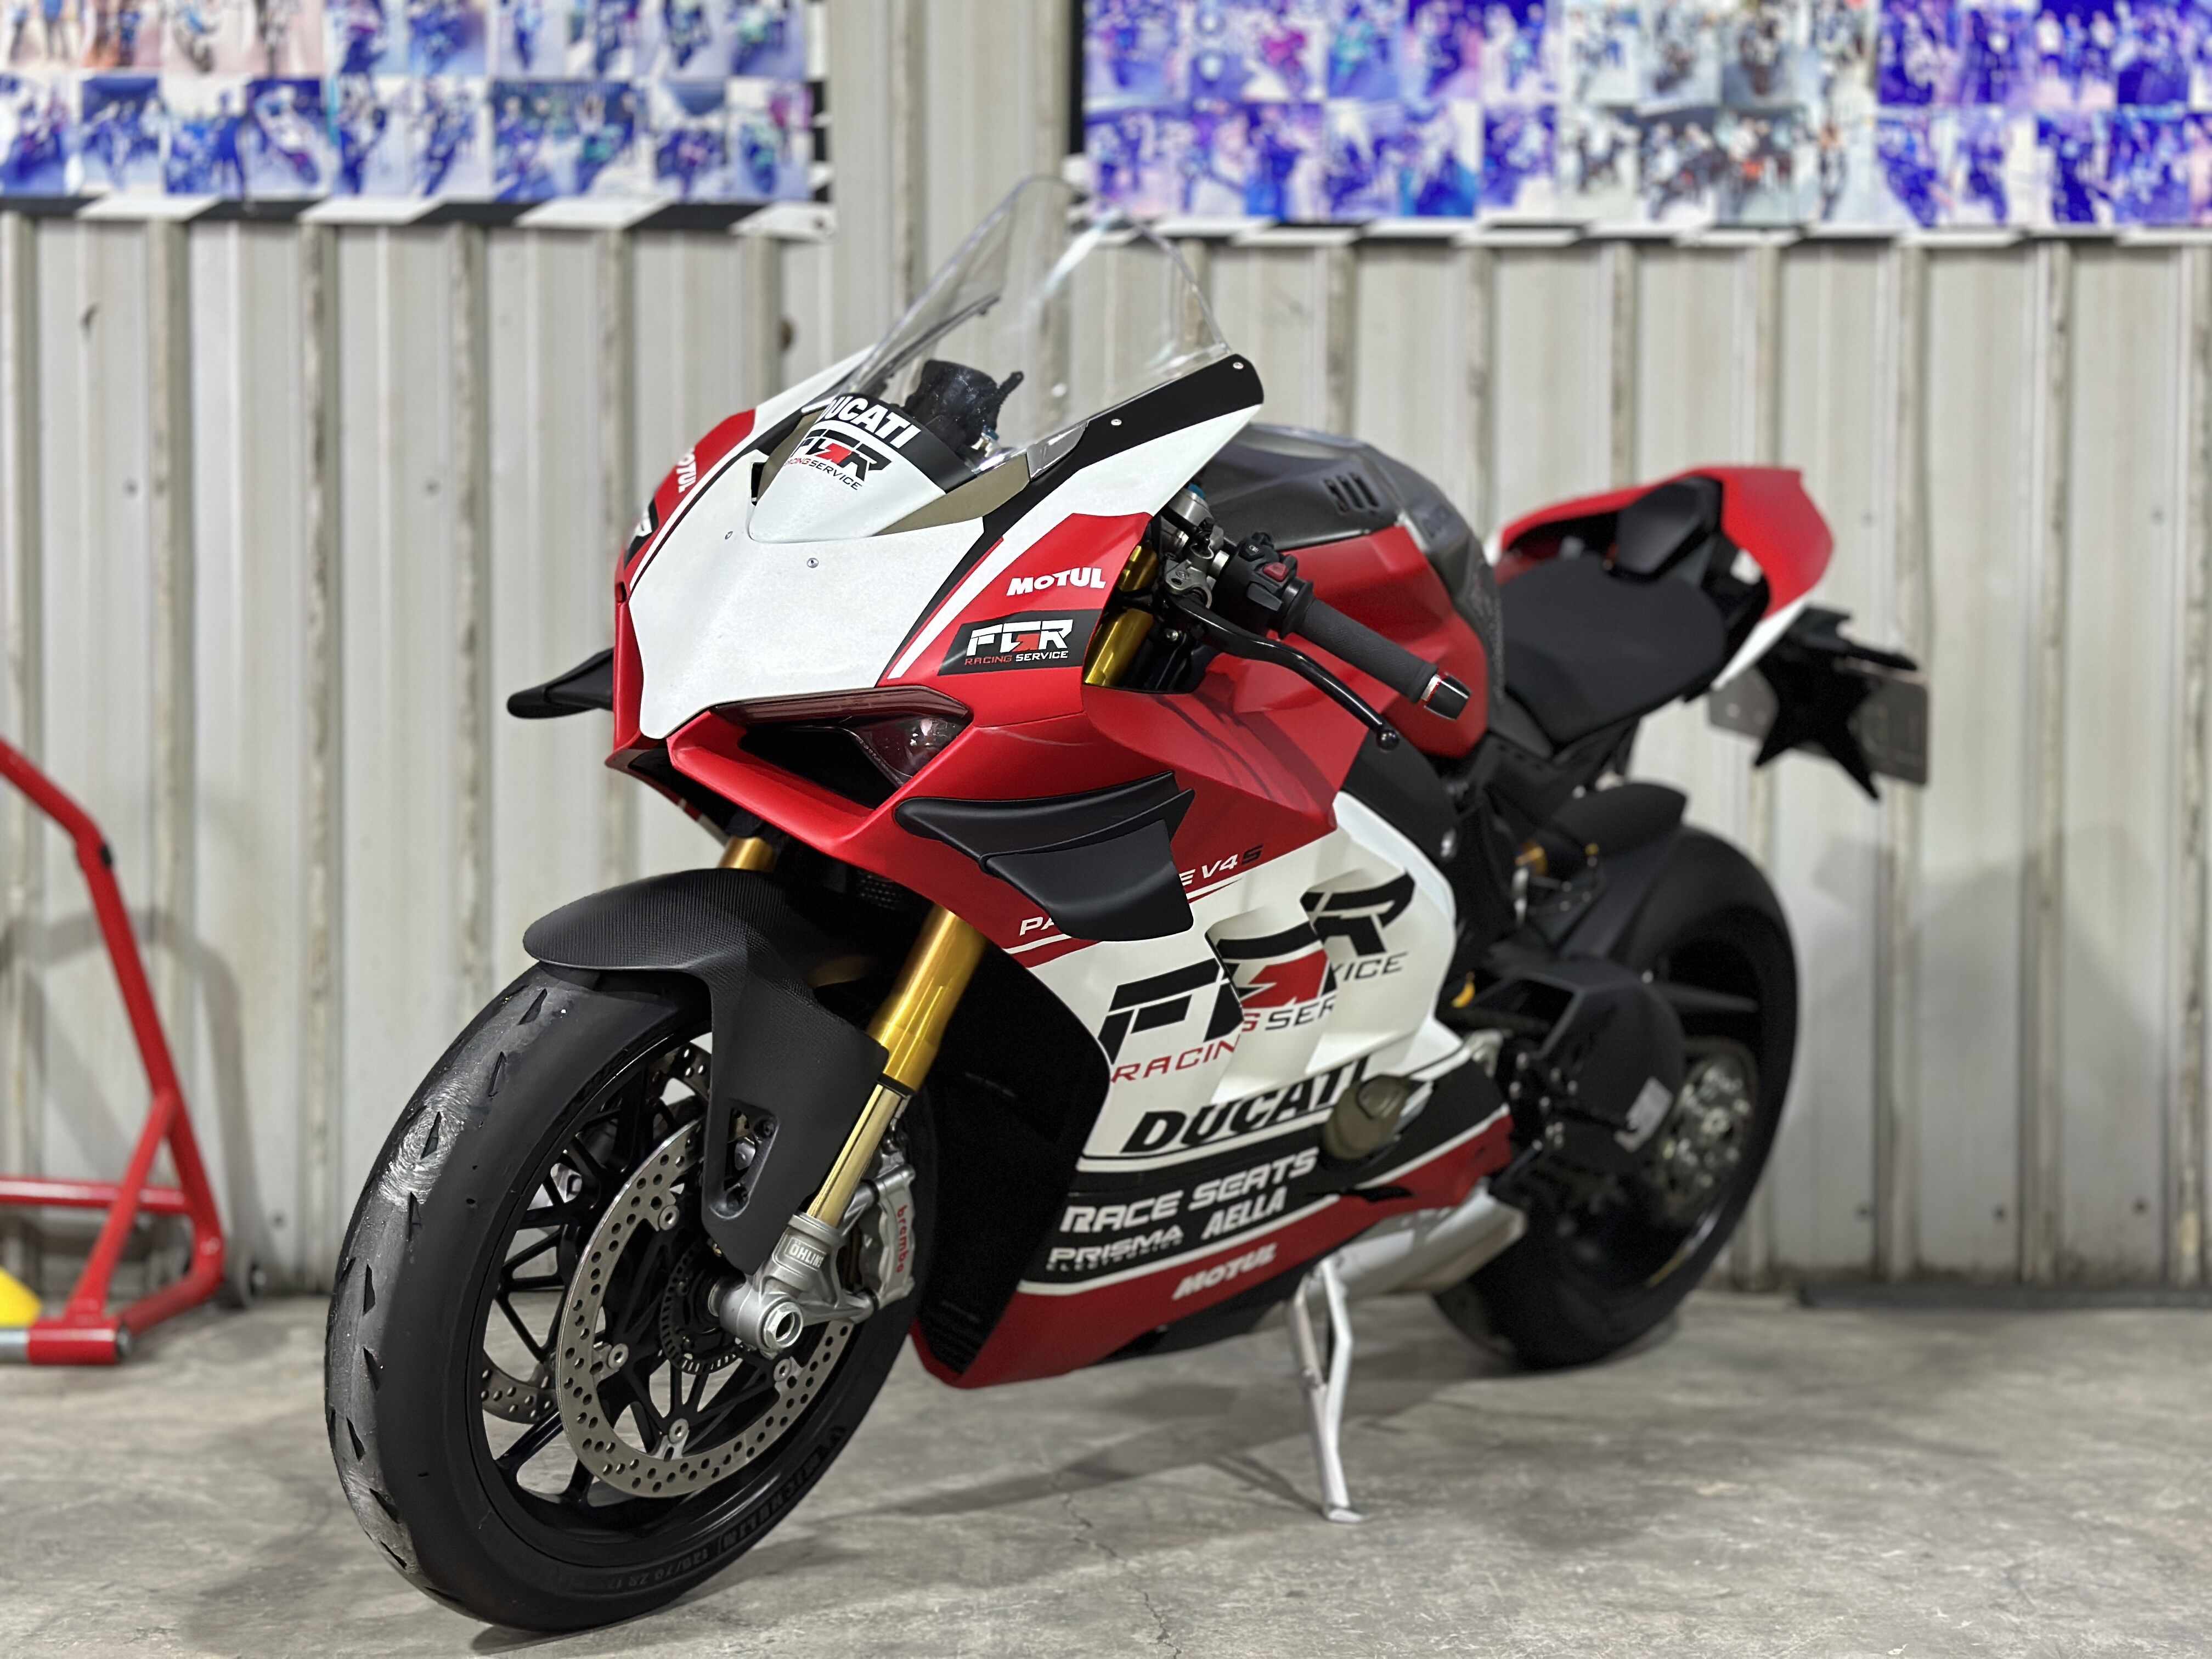 【湯姆重機】DUCATI PANIGALE V4 S - 「Webike-摩托車市」 湯姆重機 2020 Ducati Panigale V4S 公司車